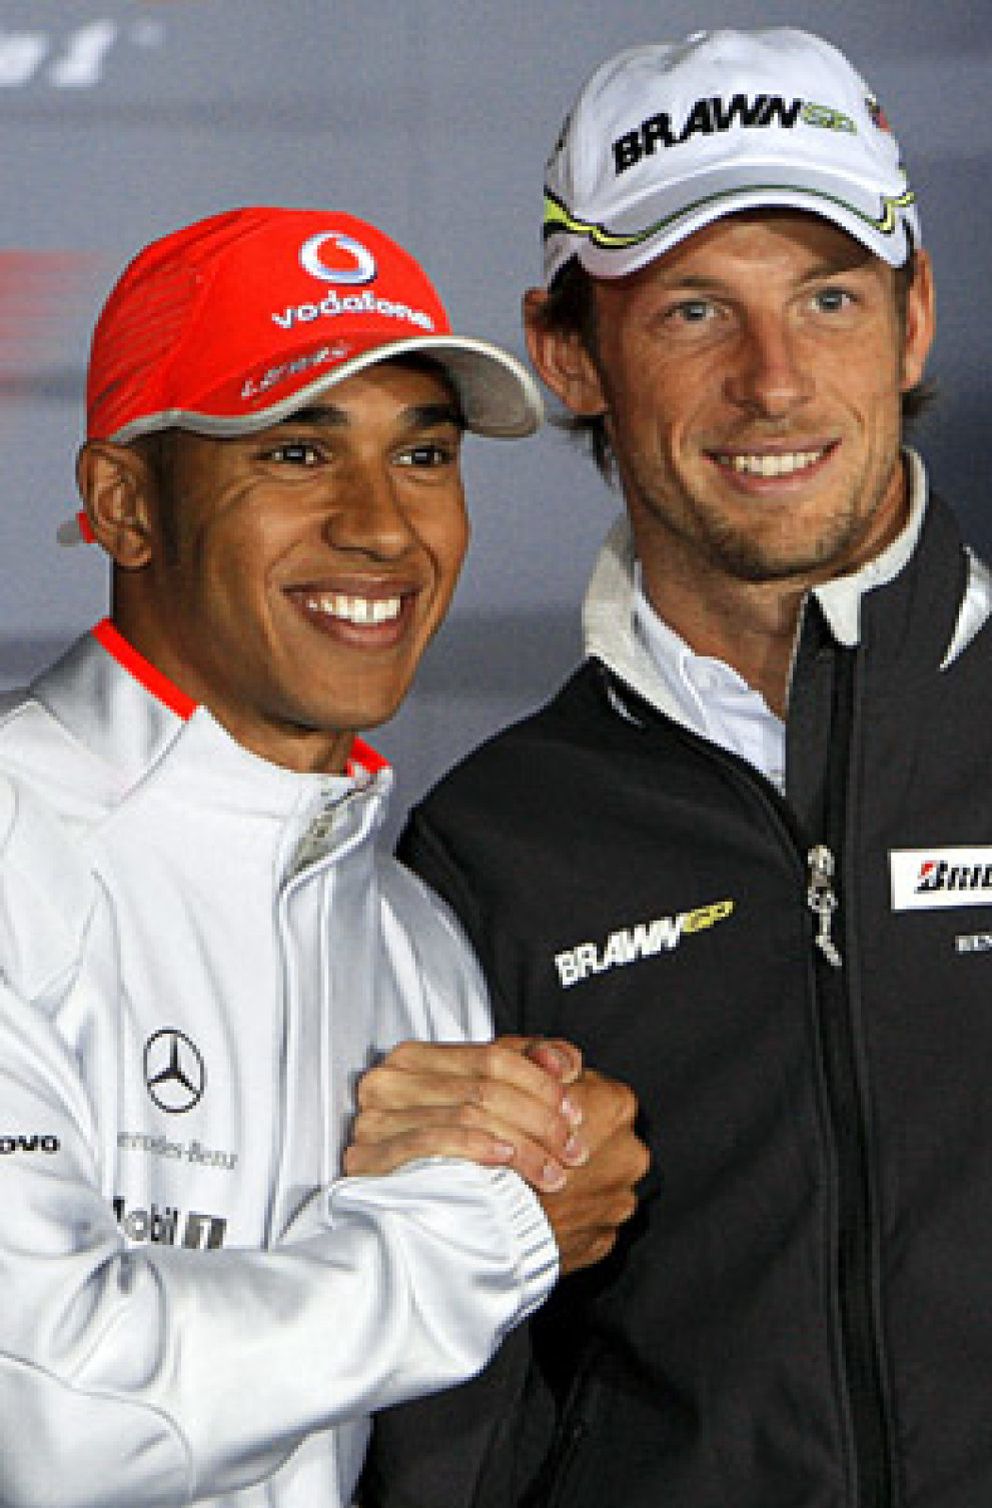 Foto: Jenson Button ya ha acordado su contrato con McLaren según la prensa inglesa